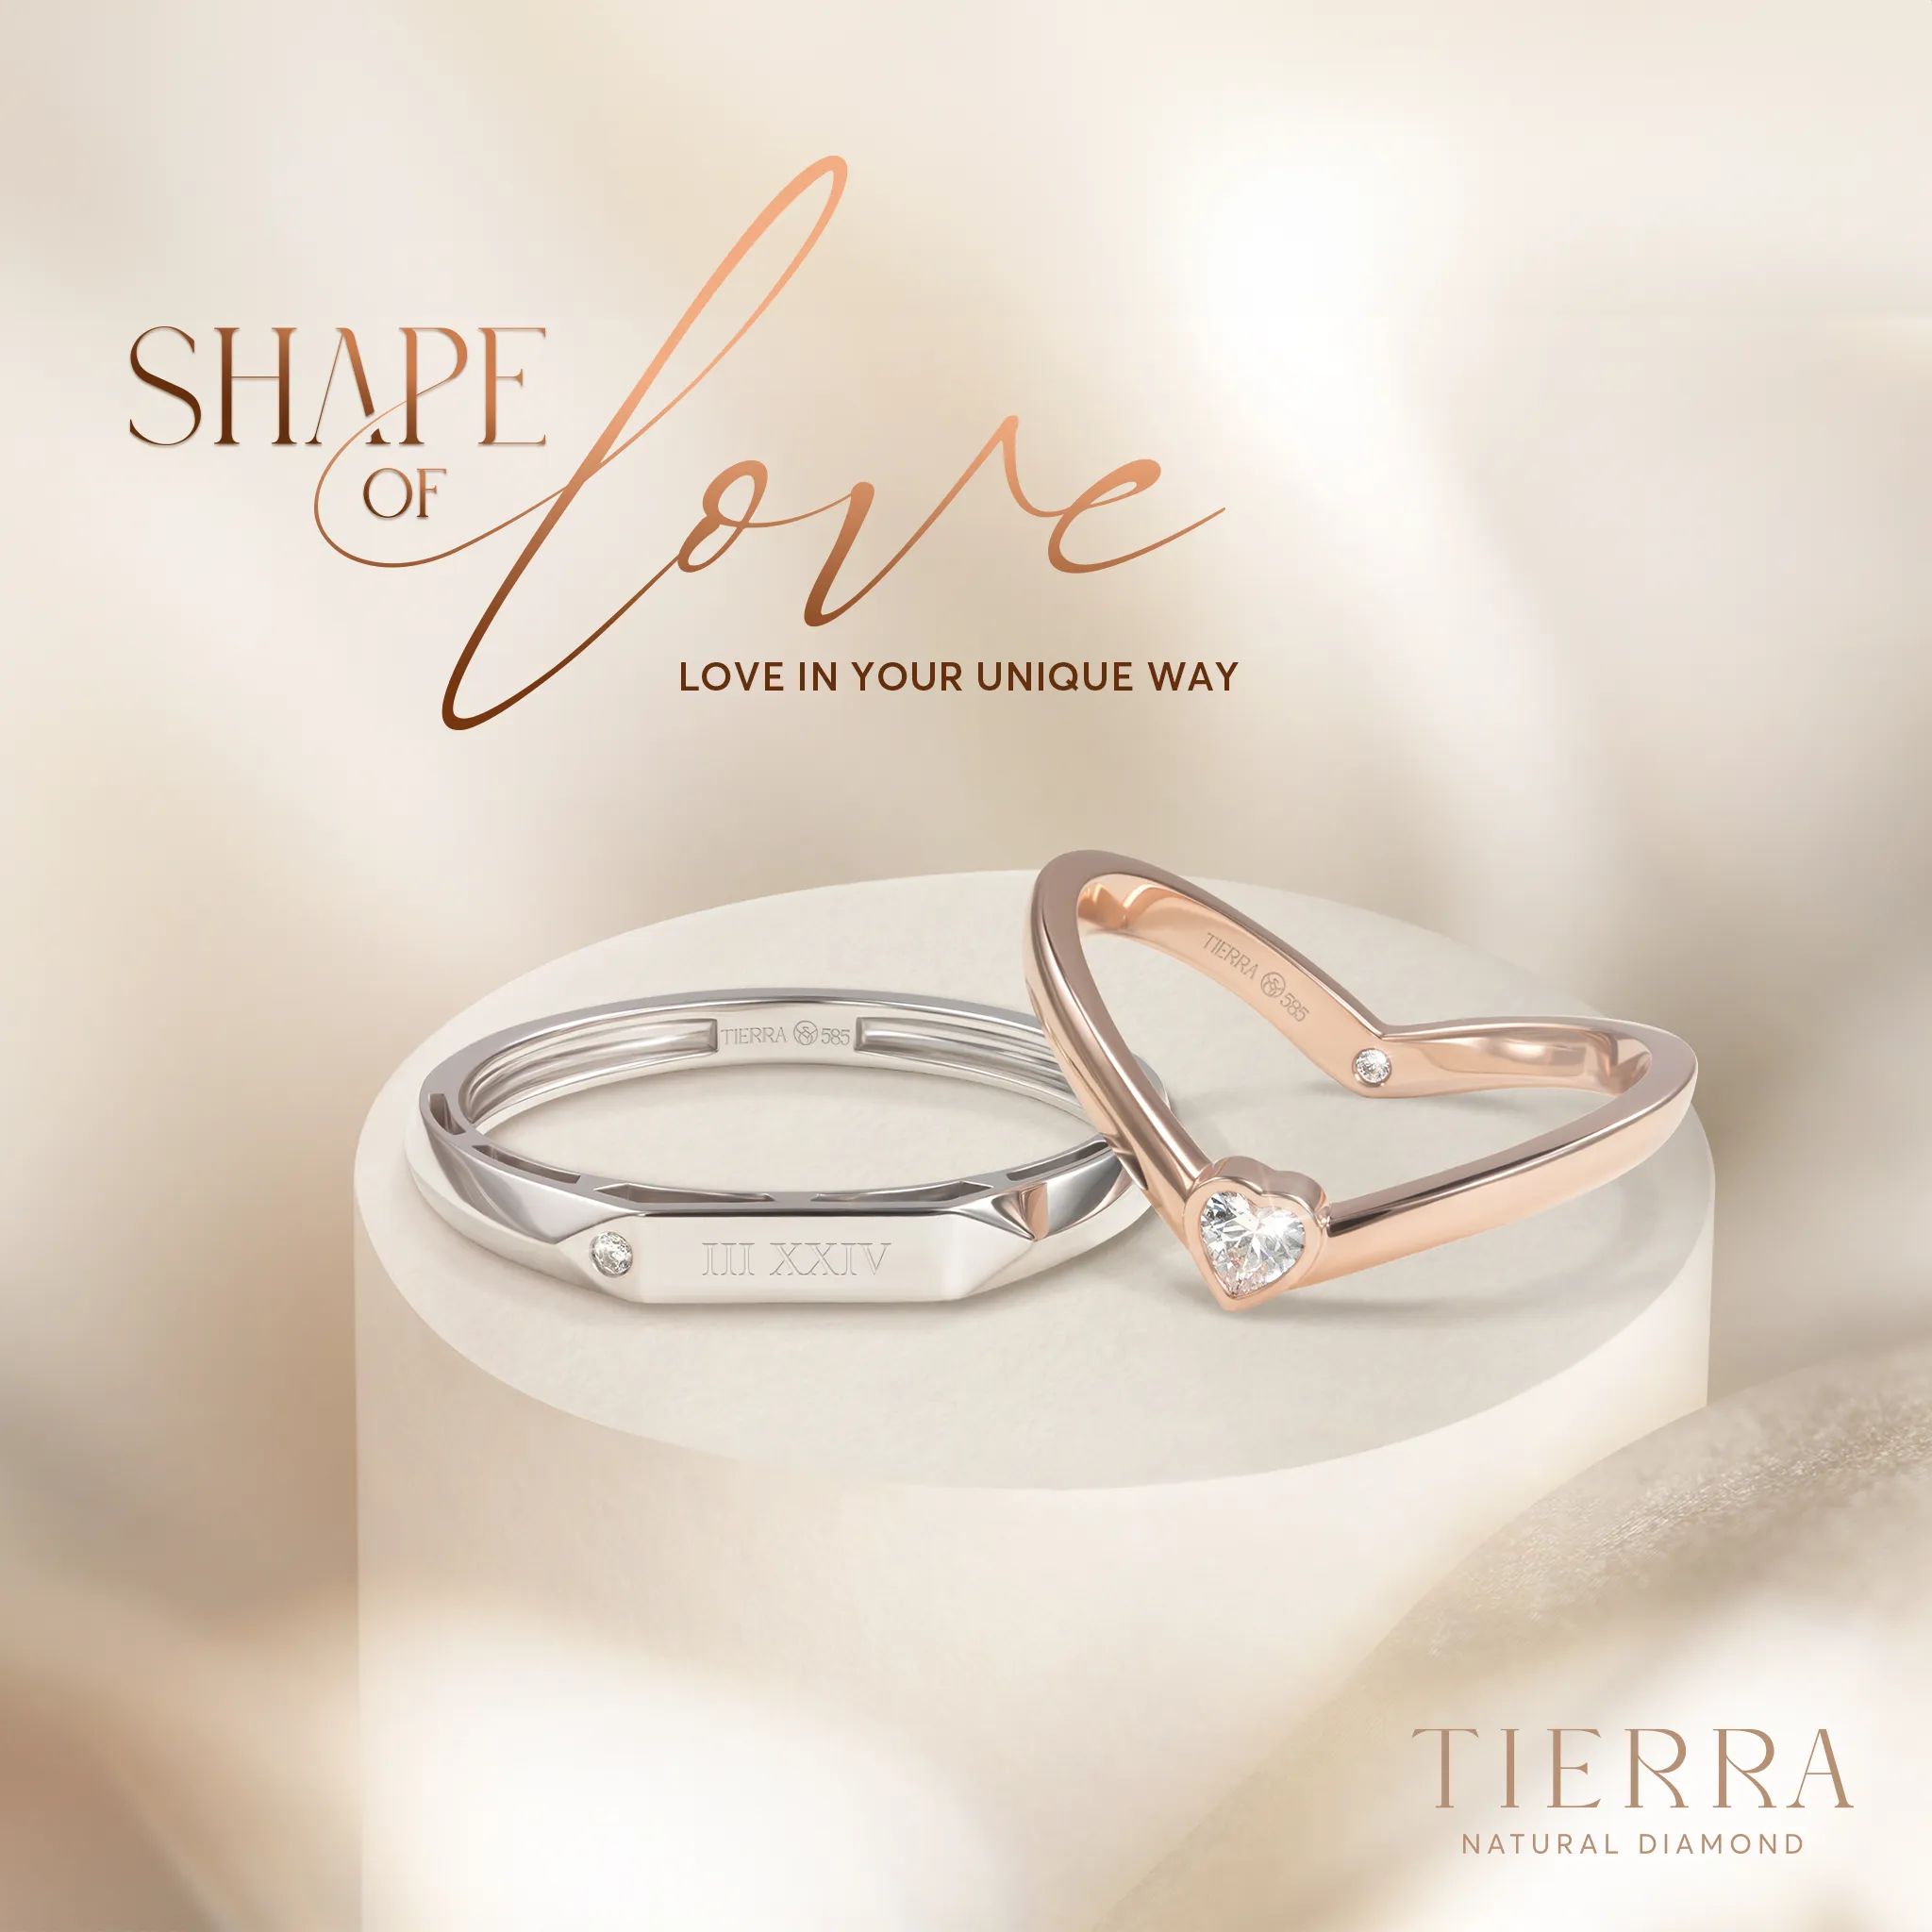 Bộ sưu tập nhẫn cưới mới nhất “Shape Of Love - Love in your unique way"